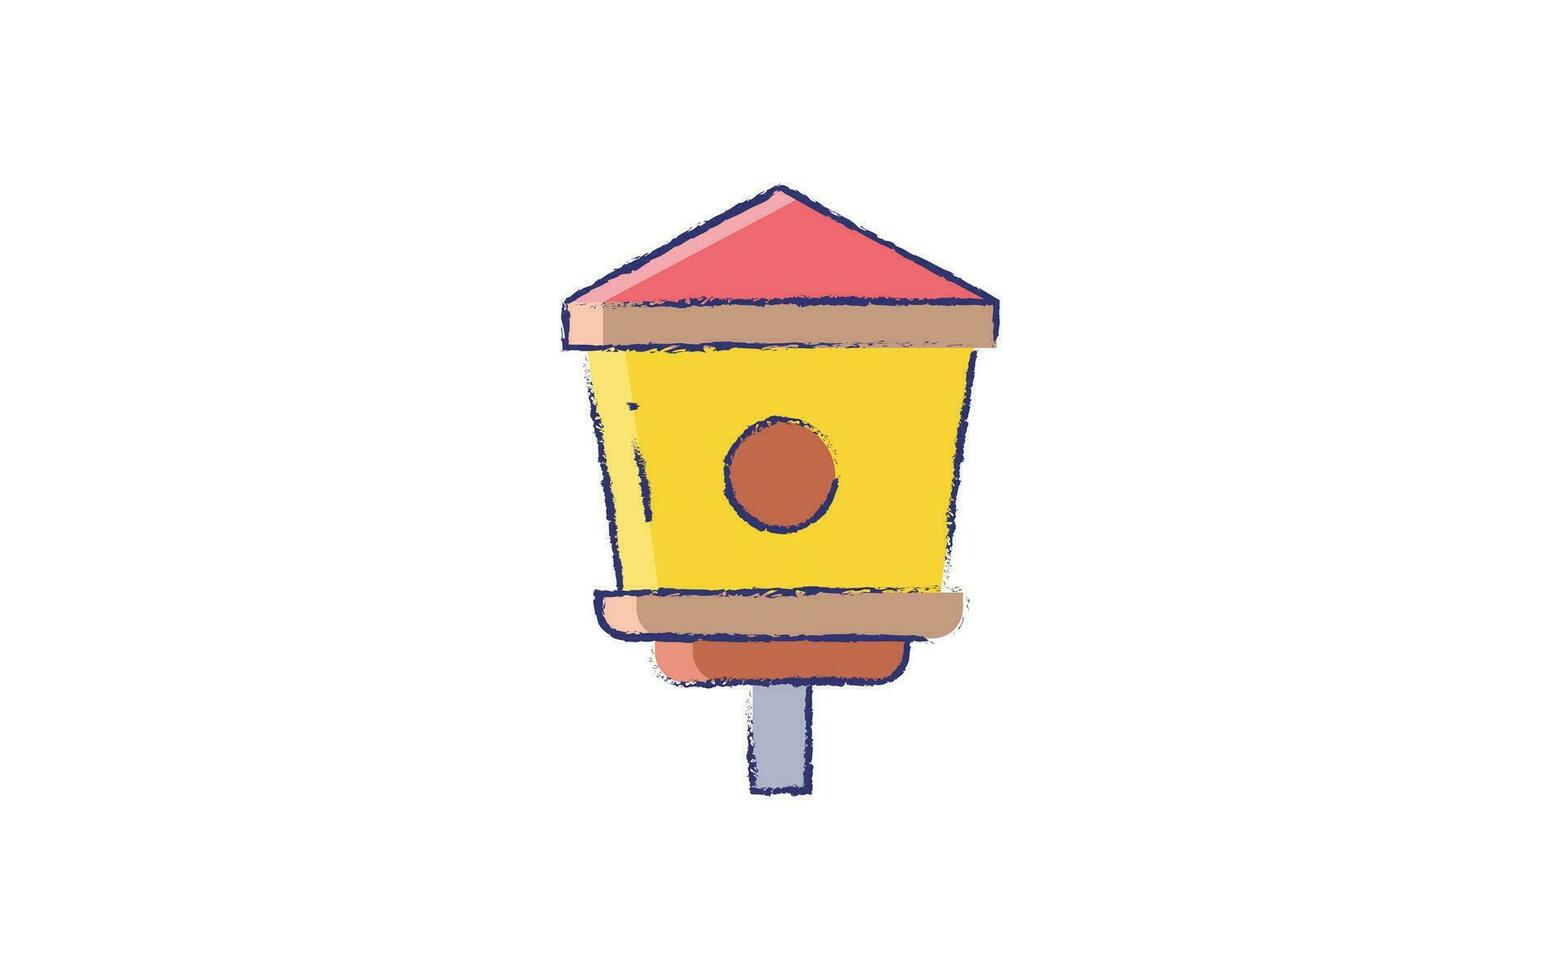 Casa de passarinho mão desenhado ilustração vetor